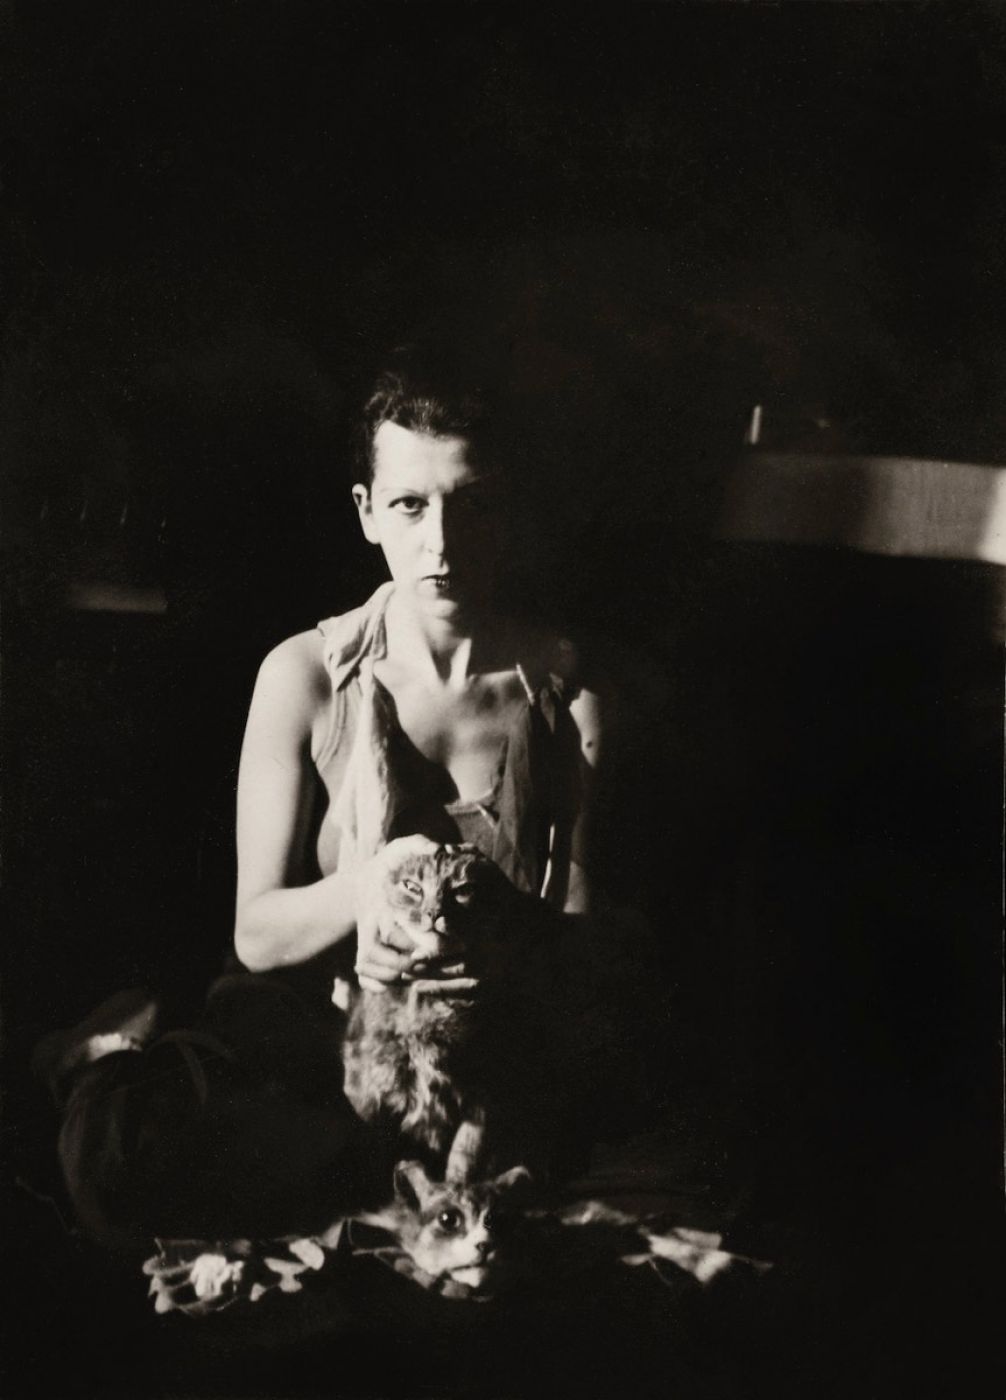 Claude Cahun, “Autoportrait au Chat”, 1927